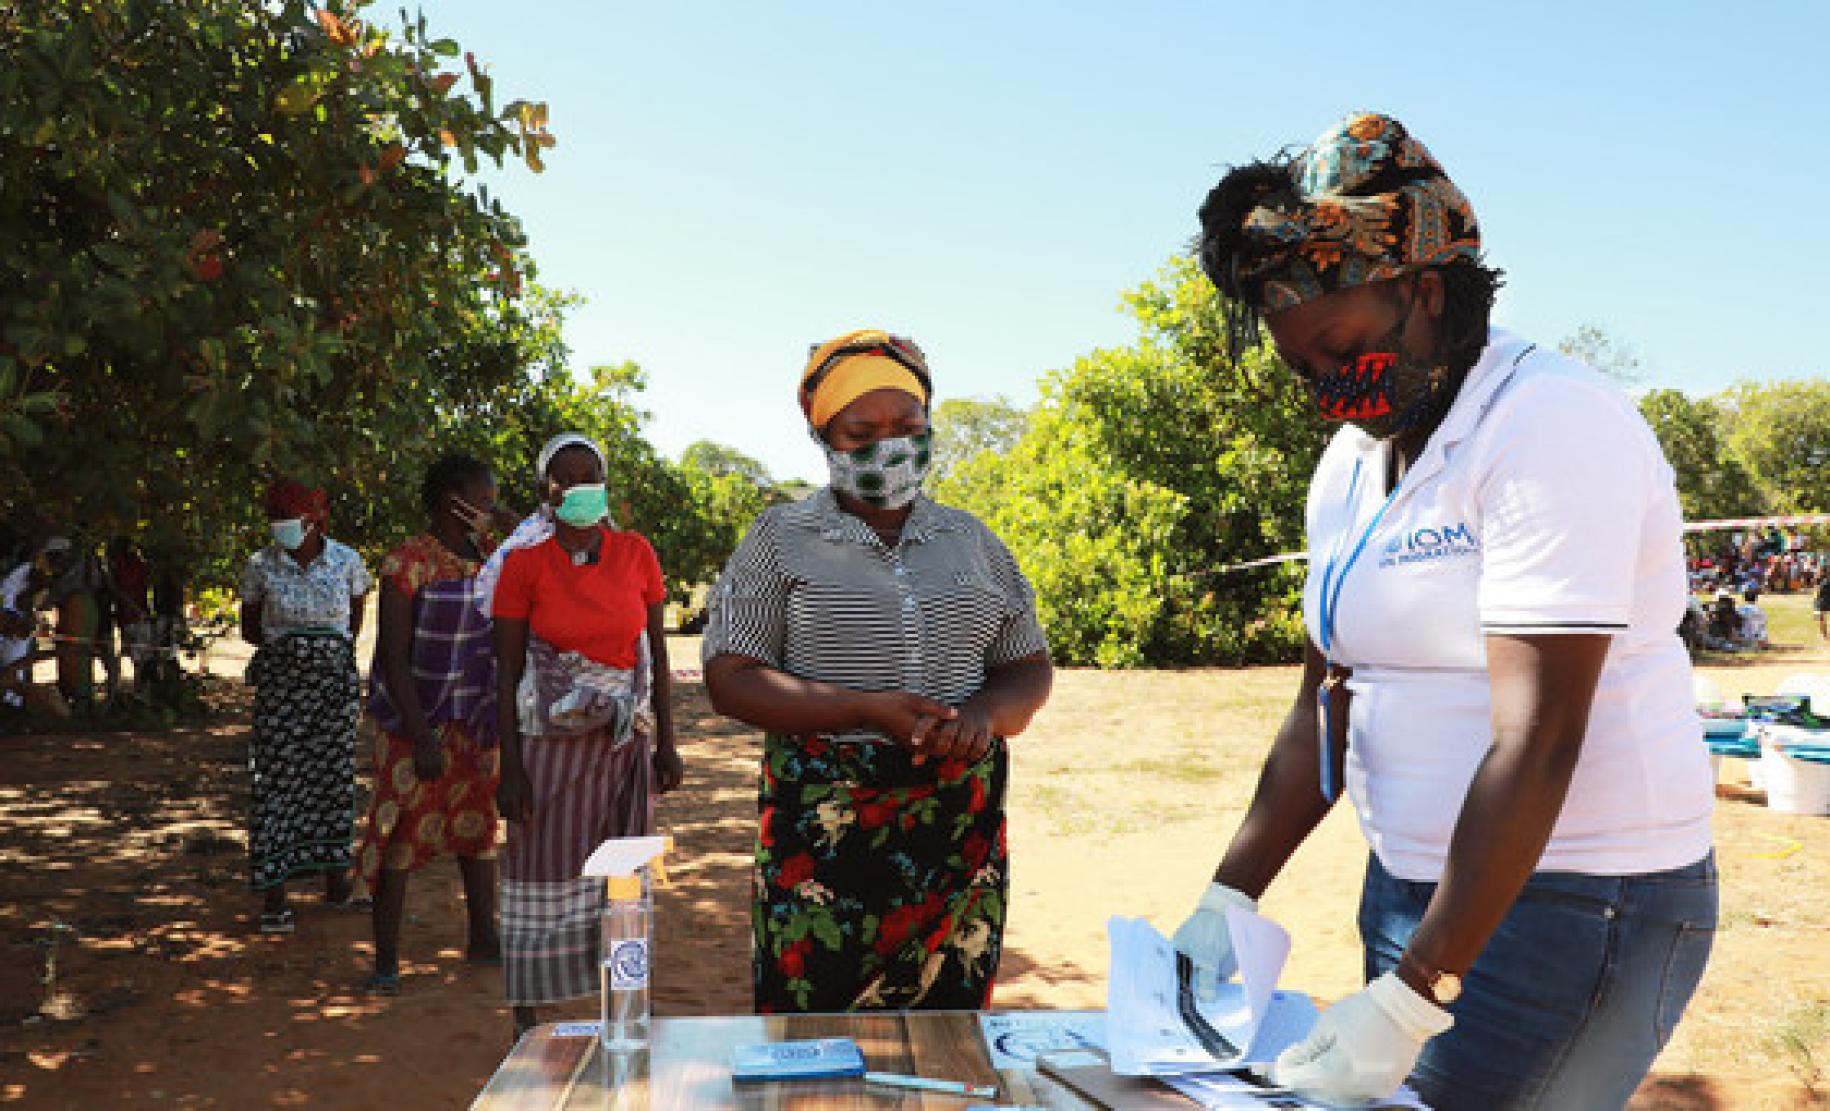 Dans la province de Cabo Delgado, un membre féminin du personnel de l'OIM procède à l'accueil de femmes déplacées, qui font la queue en attendant d'être enregistrées. Toutes les femmes portent un masque de protection respiratoire.